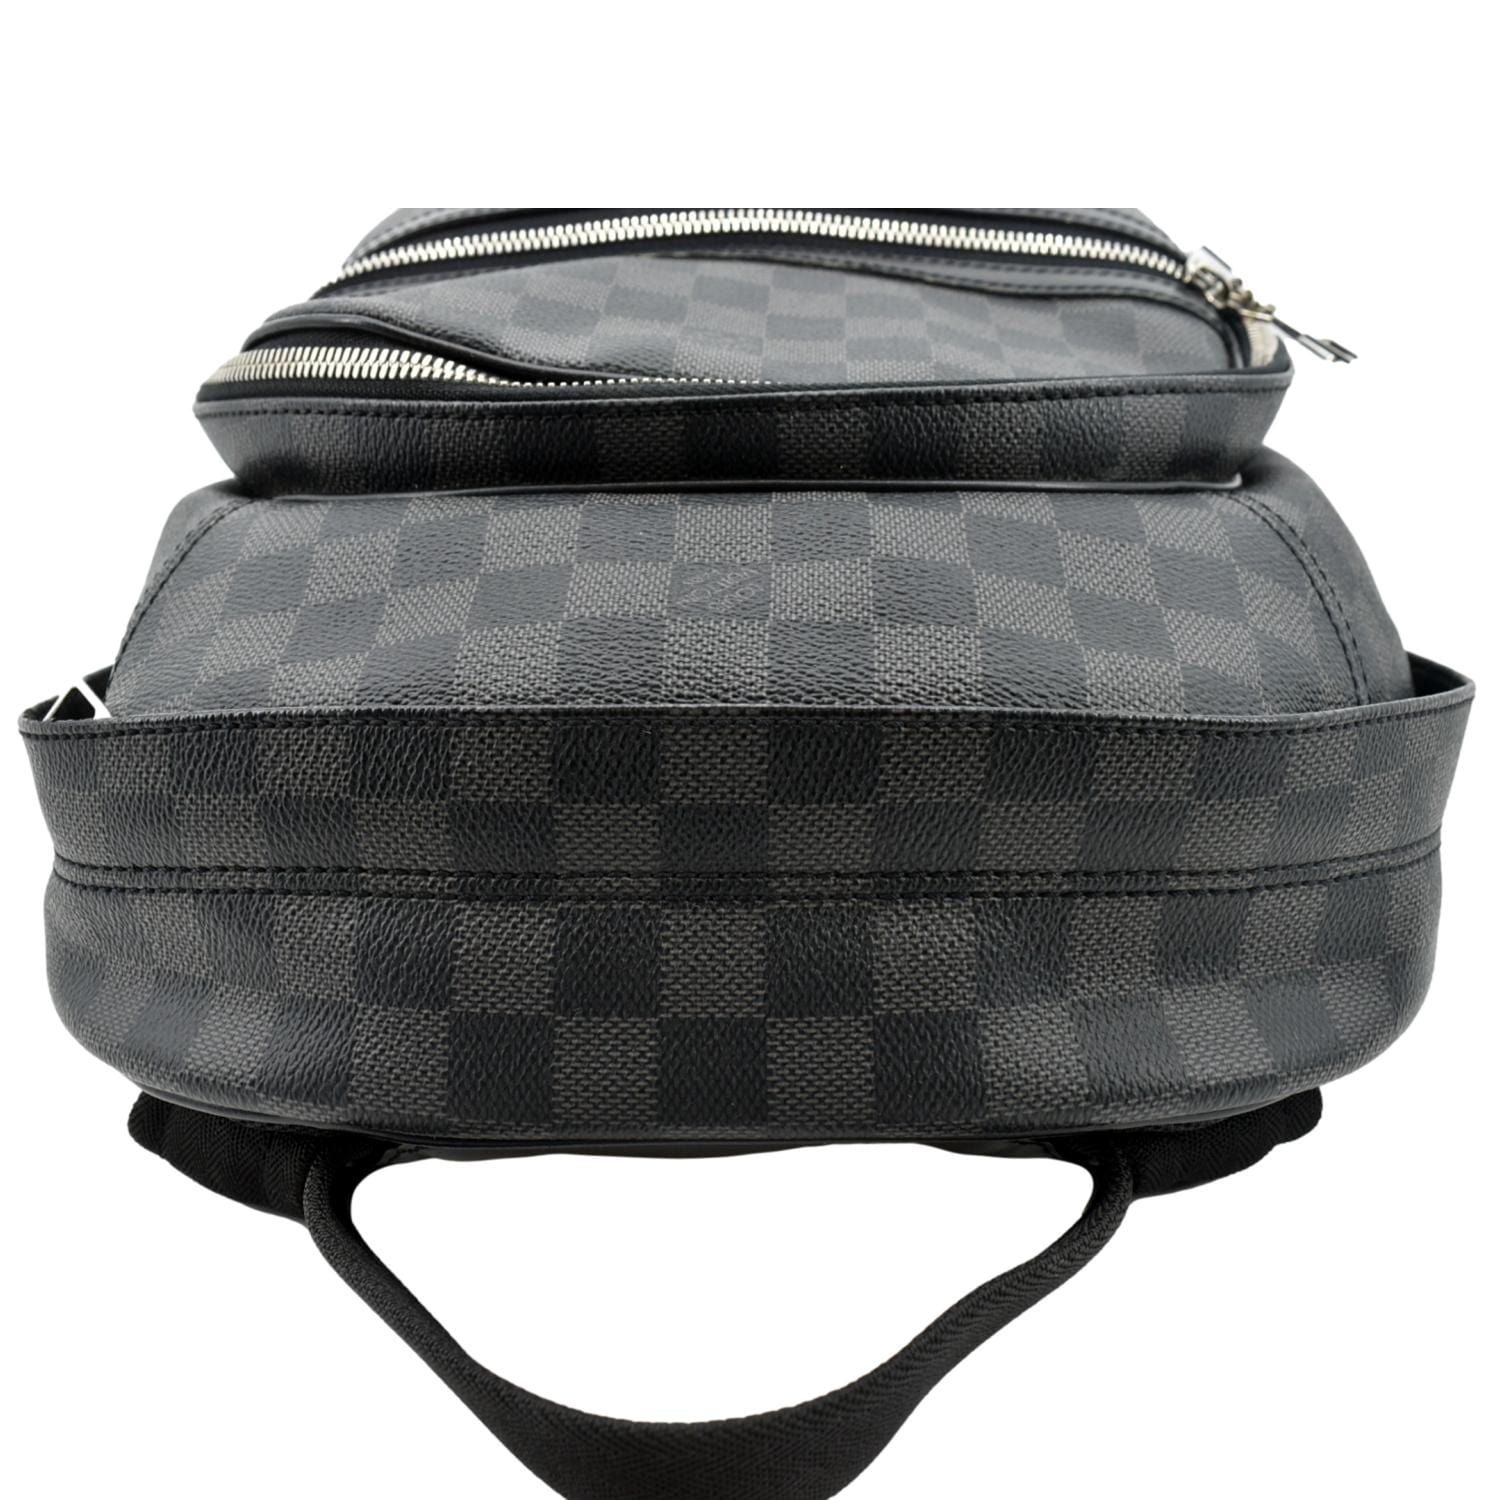 Louis Vuitton Michael Damier Graphite Backpack